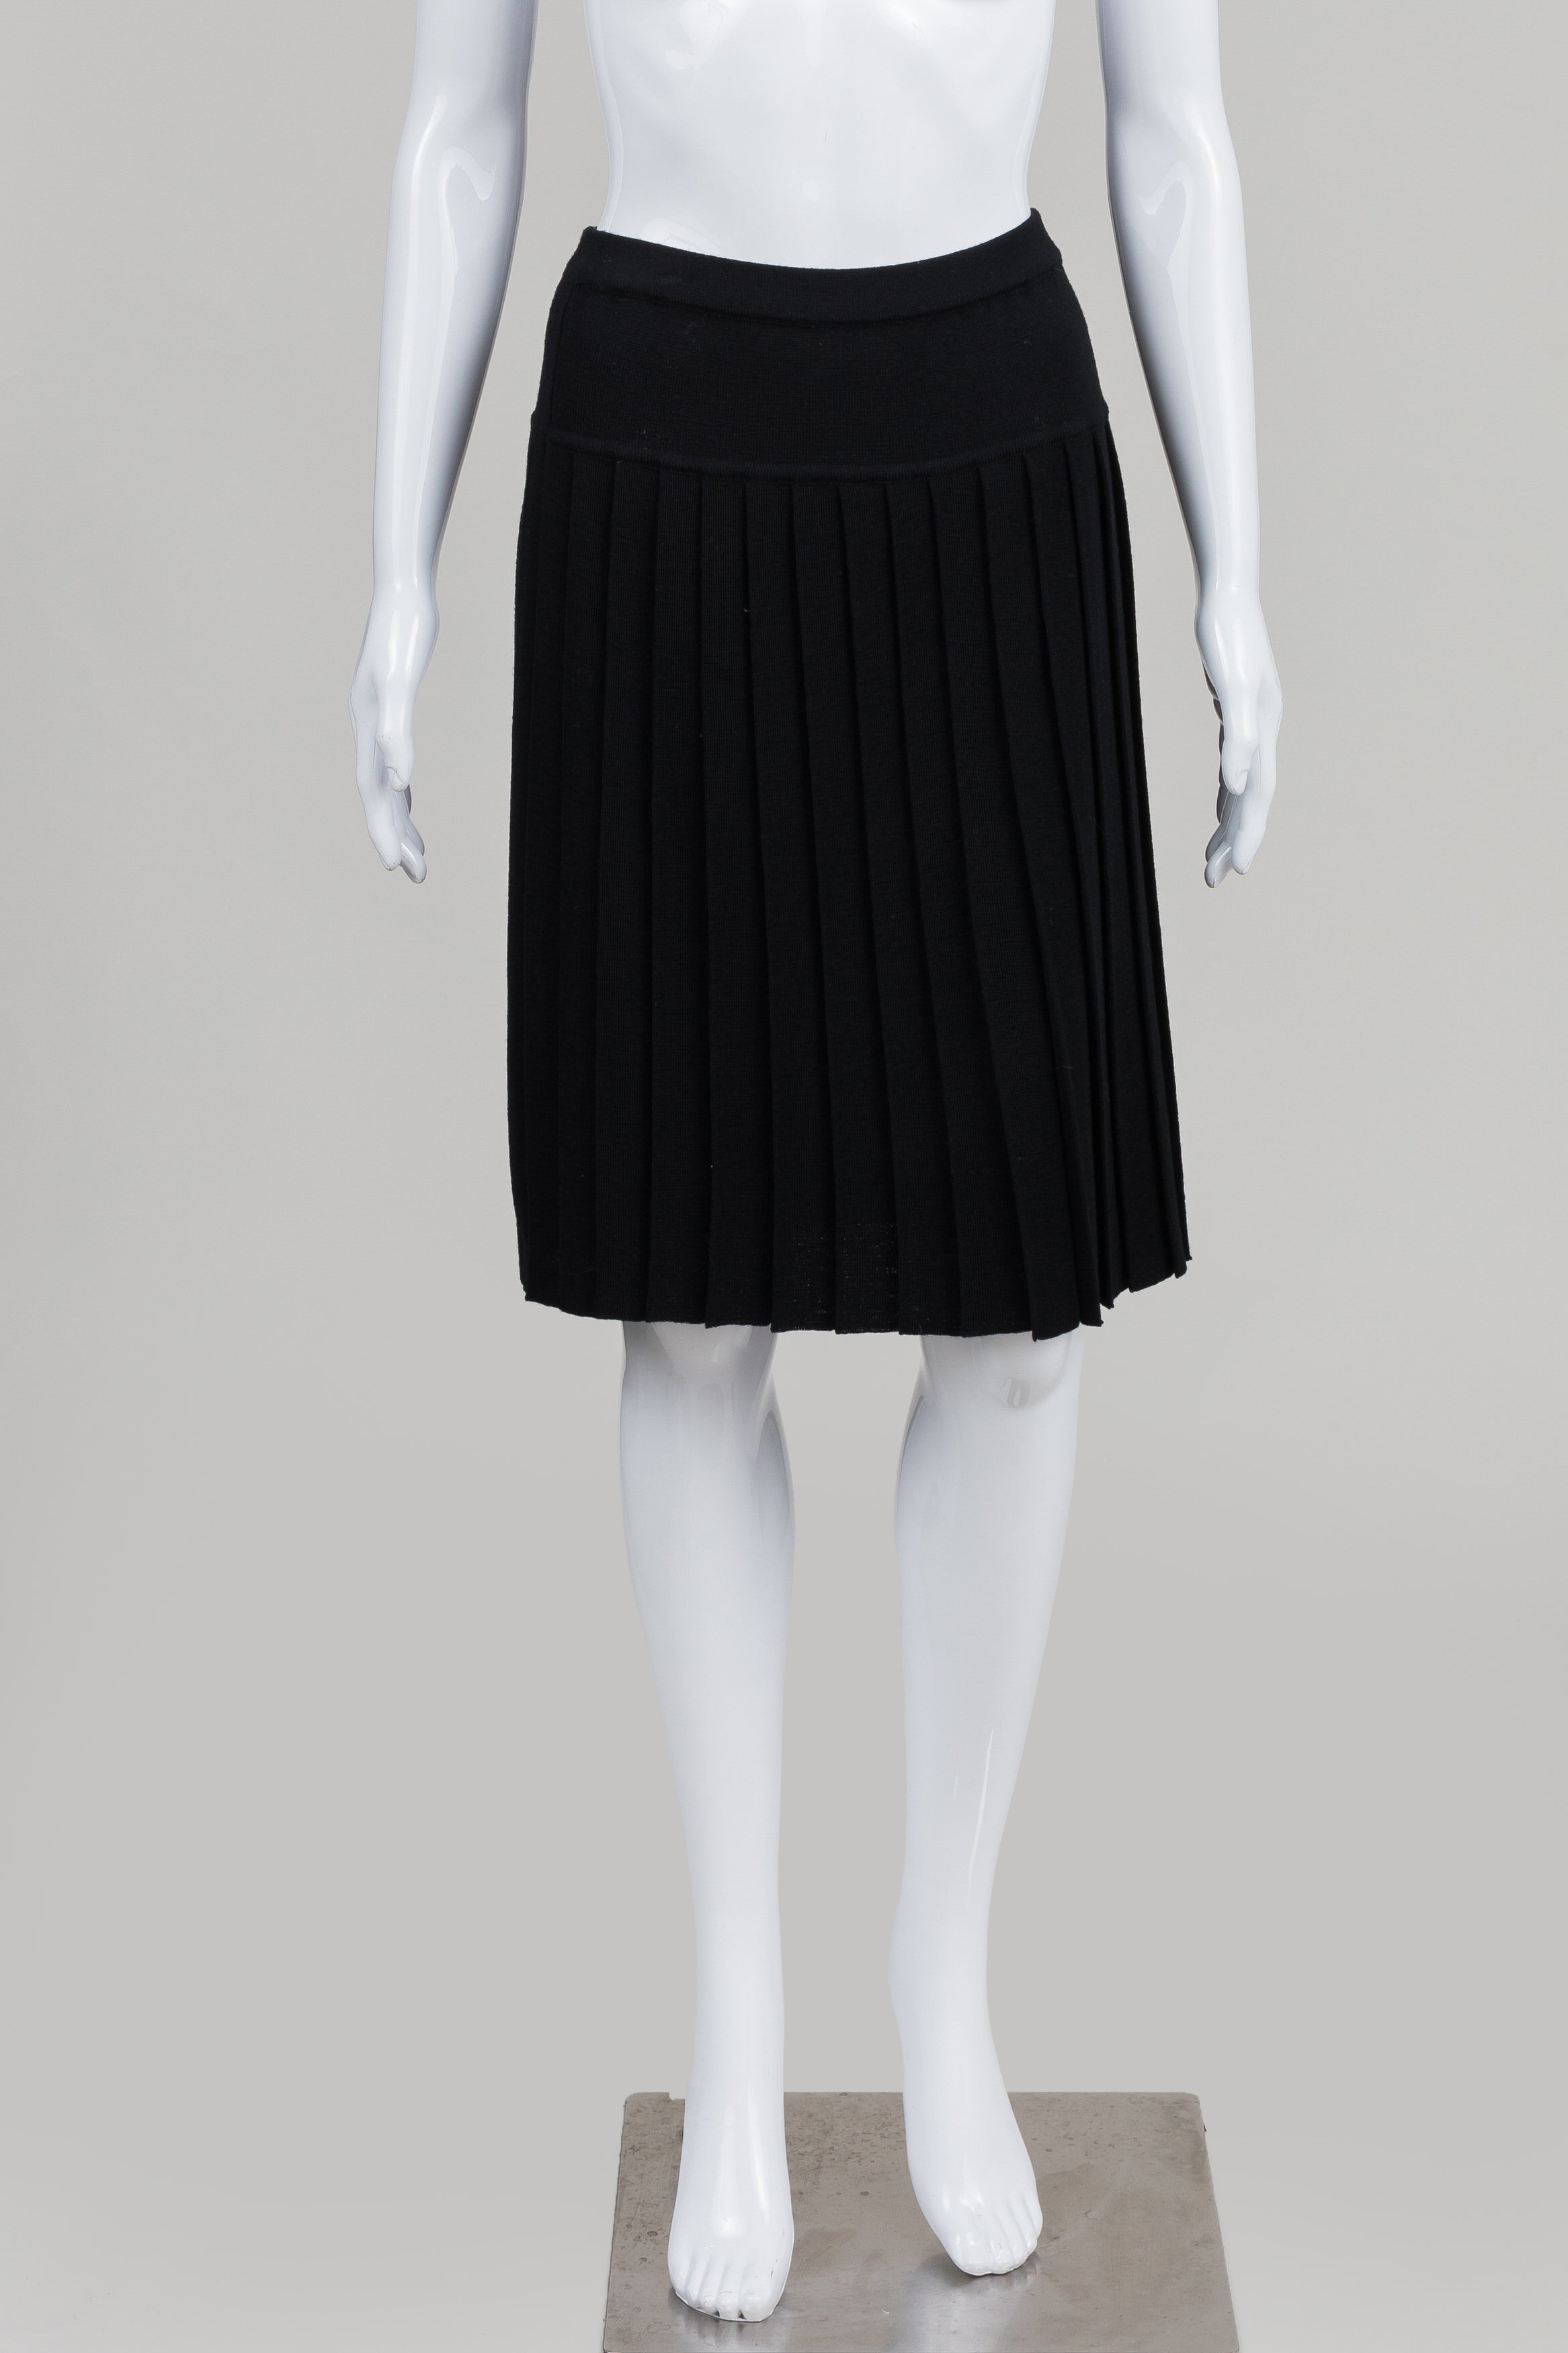 Dana Buchman black knit pleated skirt (M) *New w/ tags